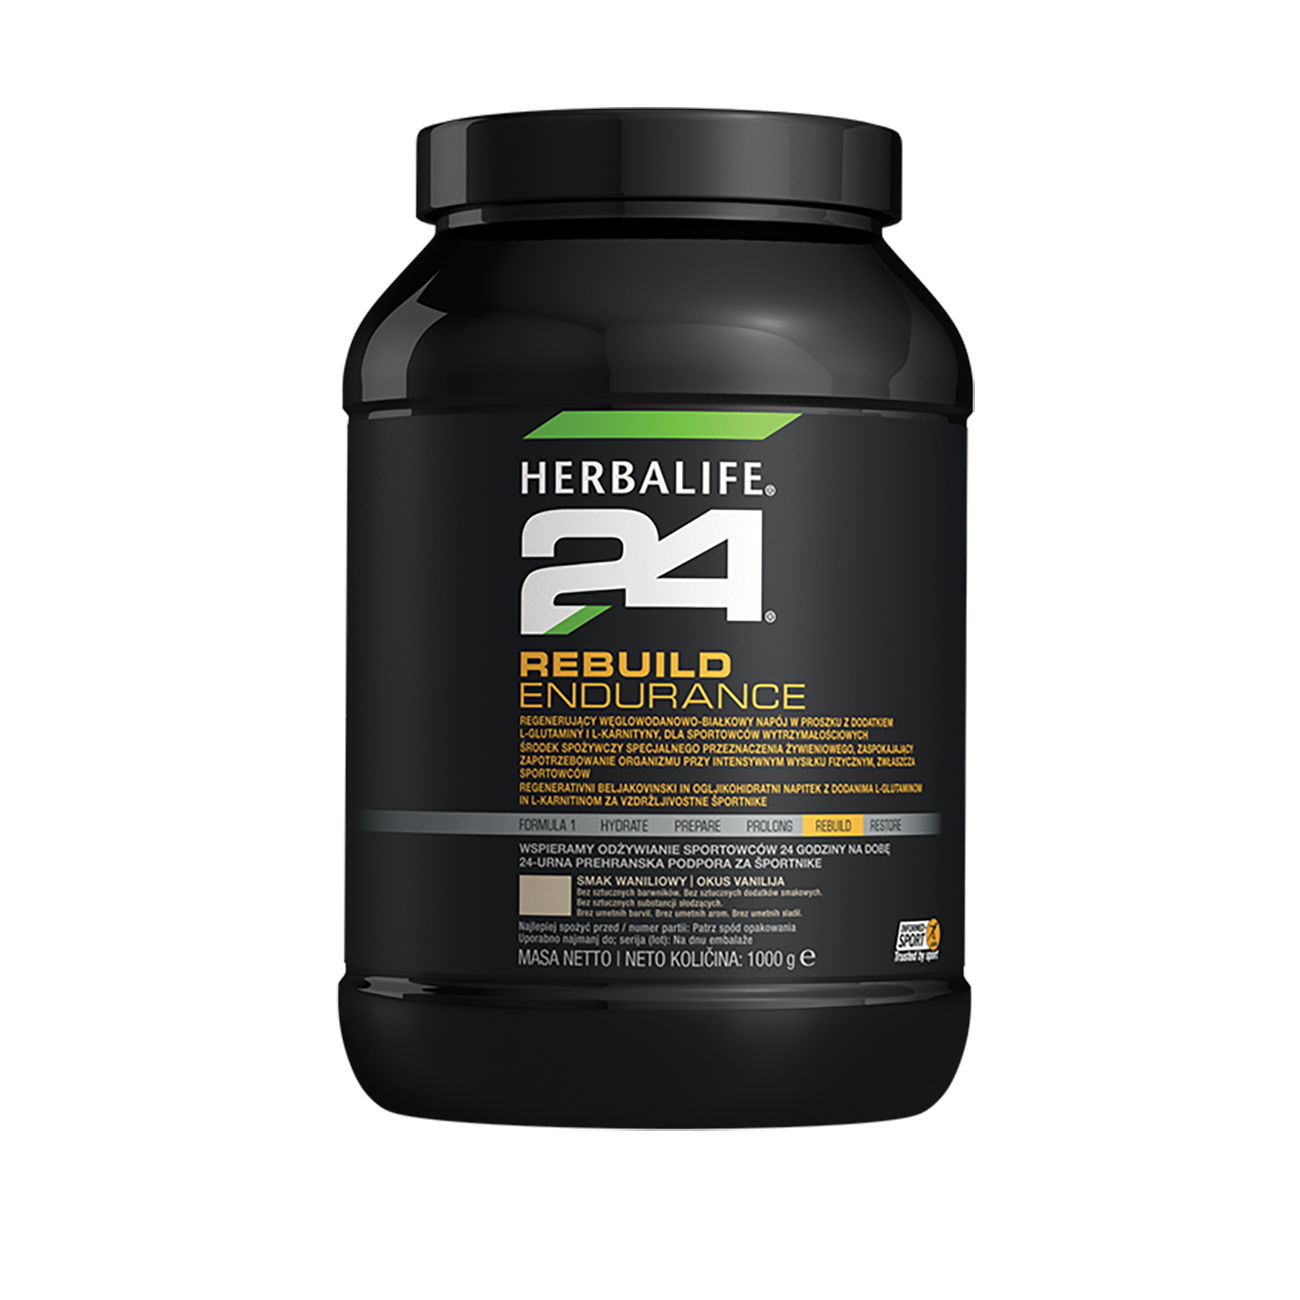 H24 Rebuild Endurance Napój proteinowo-węglowodanowy o smaku waniliowym product shot